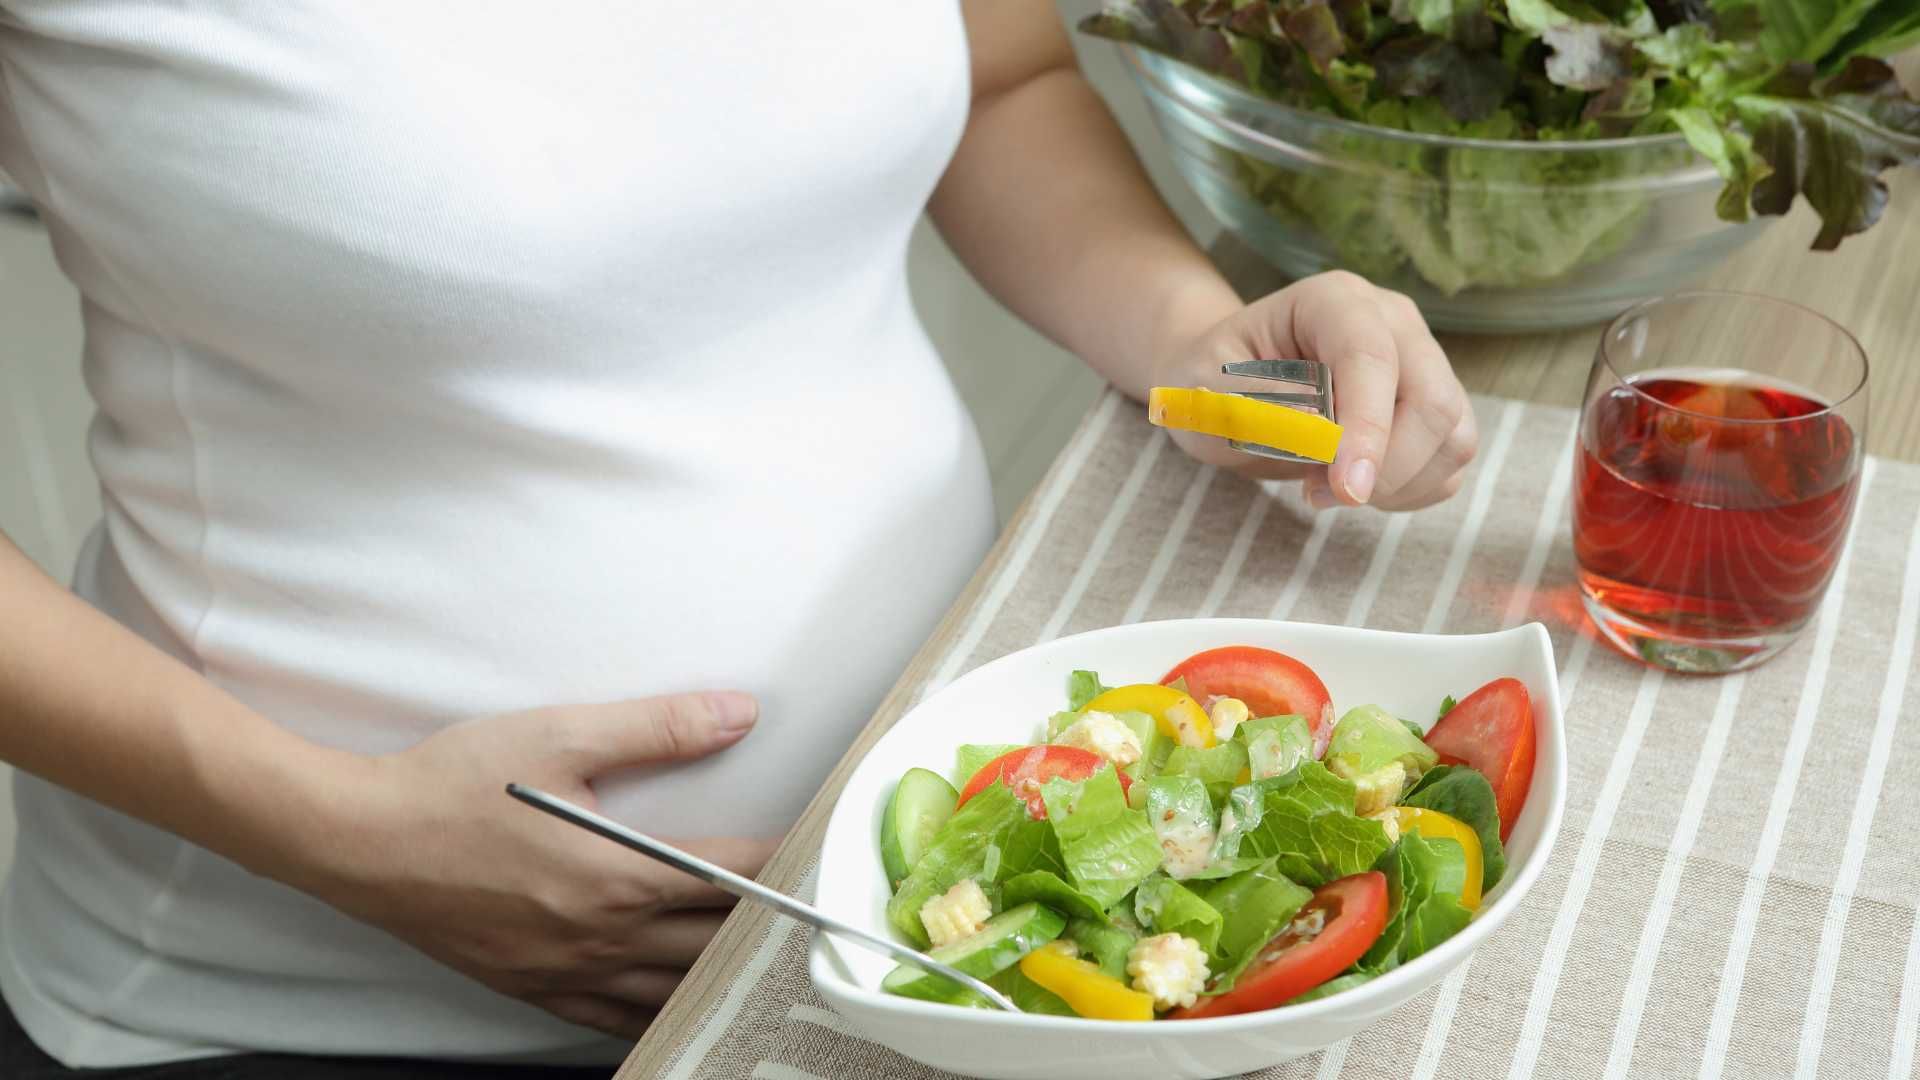 رژیم غذایی دوران بارداری و شیردهی (3 جلسه) تلفنی